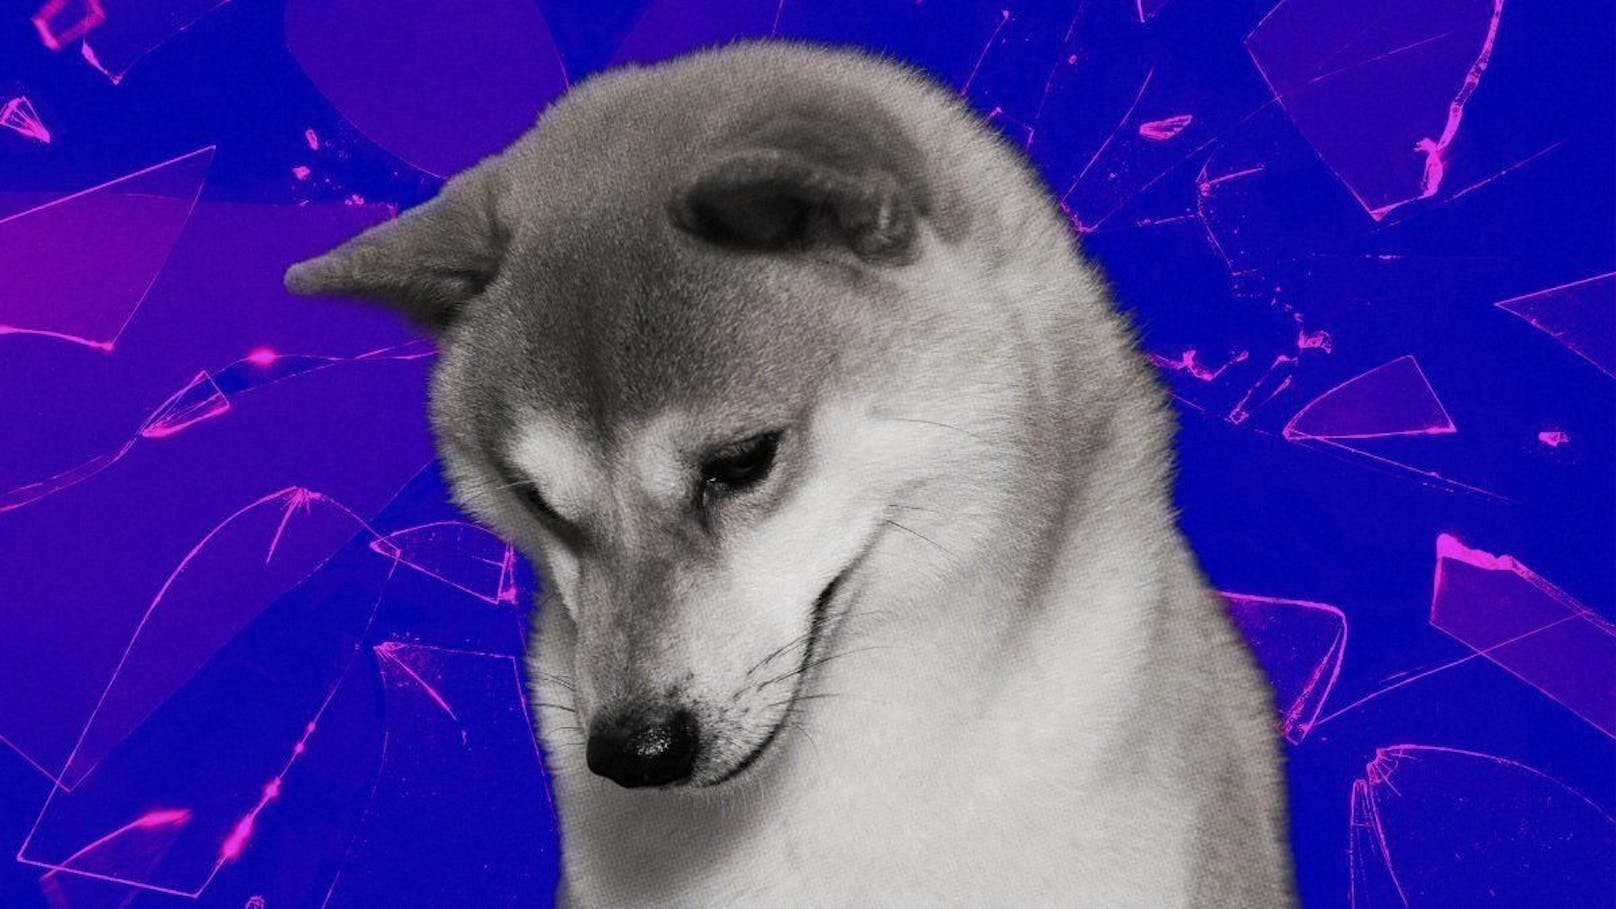 Der "Dogecoin"-Killer und Ethereum-Gründer Vitalik Buterin wurde vor allem durch seine Kryptowährungen berühmt. Er verkaufte online Memes mit den berühmten Hunden.